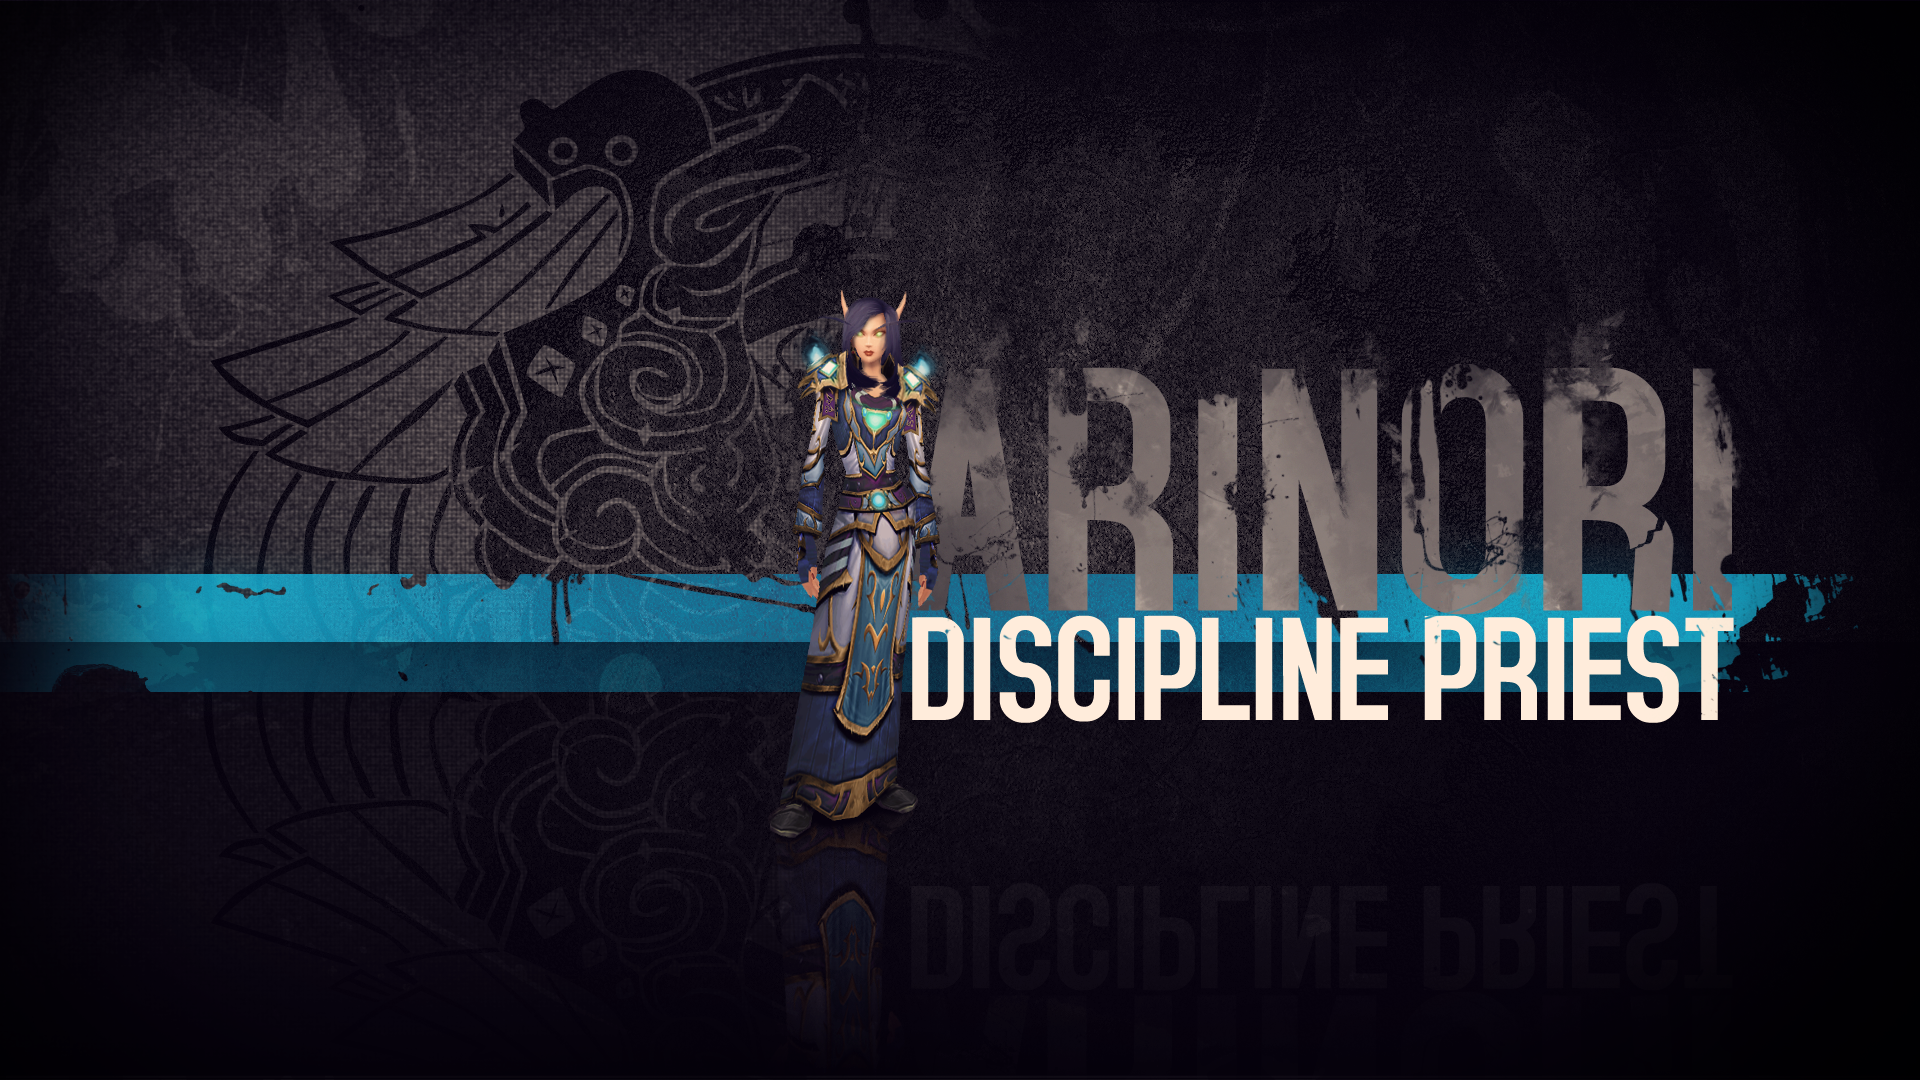 Arinoiri - Discipline Priest Wallpaper by Zionellosvk on DeviantArt